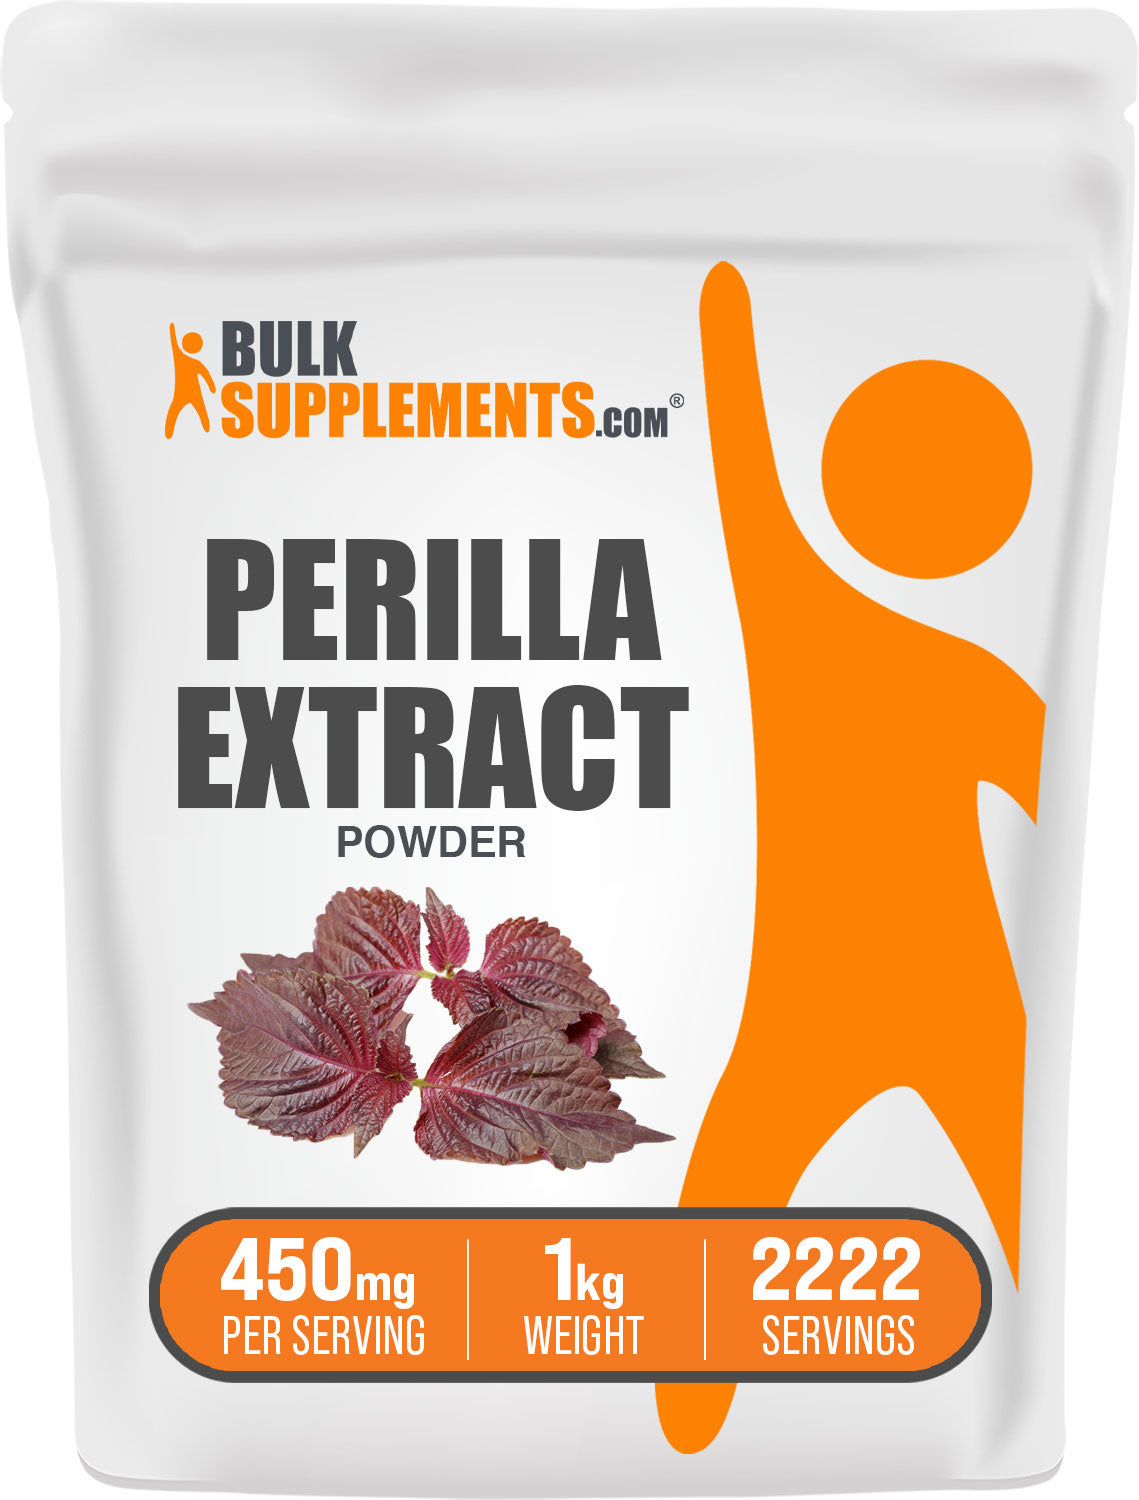 Perilla Extract 1kg Bag